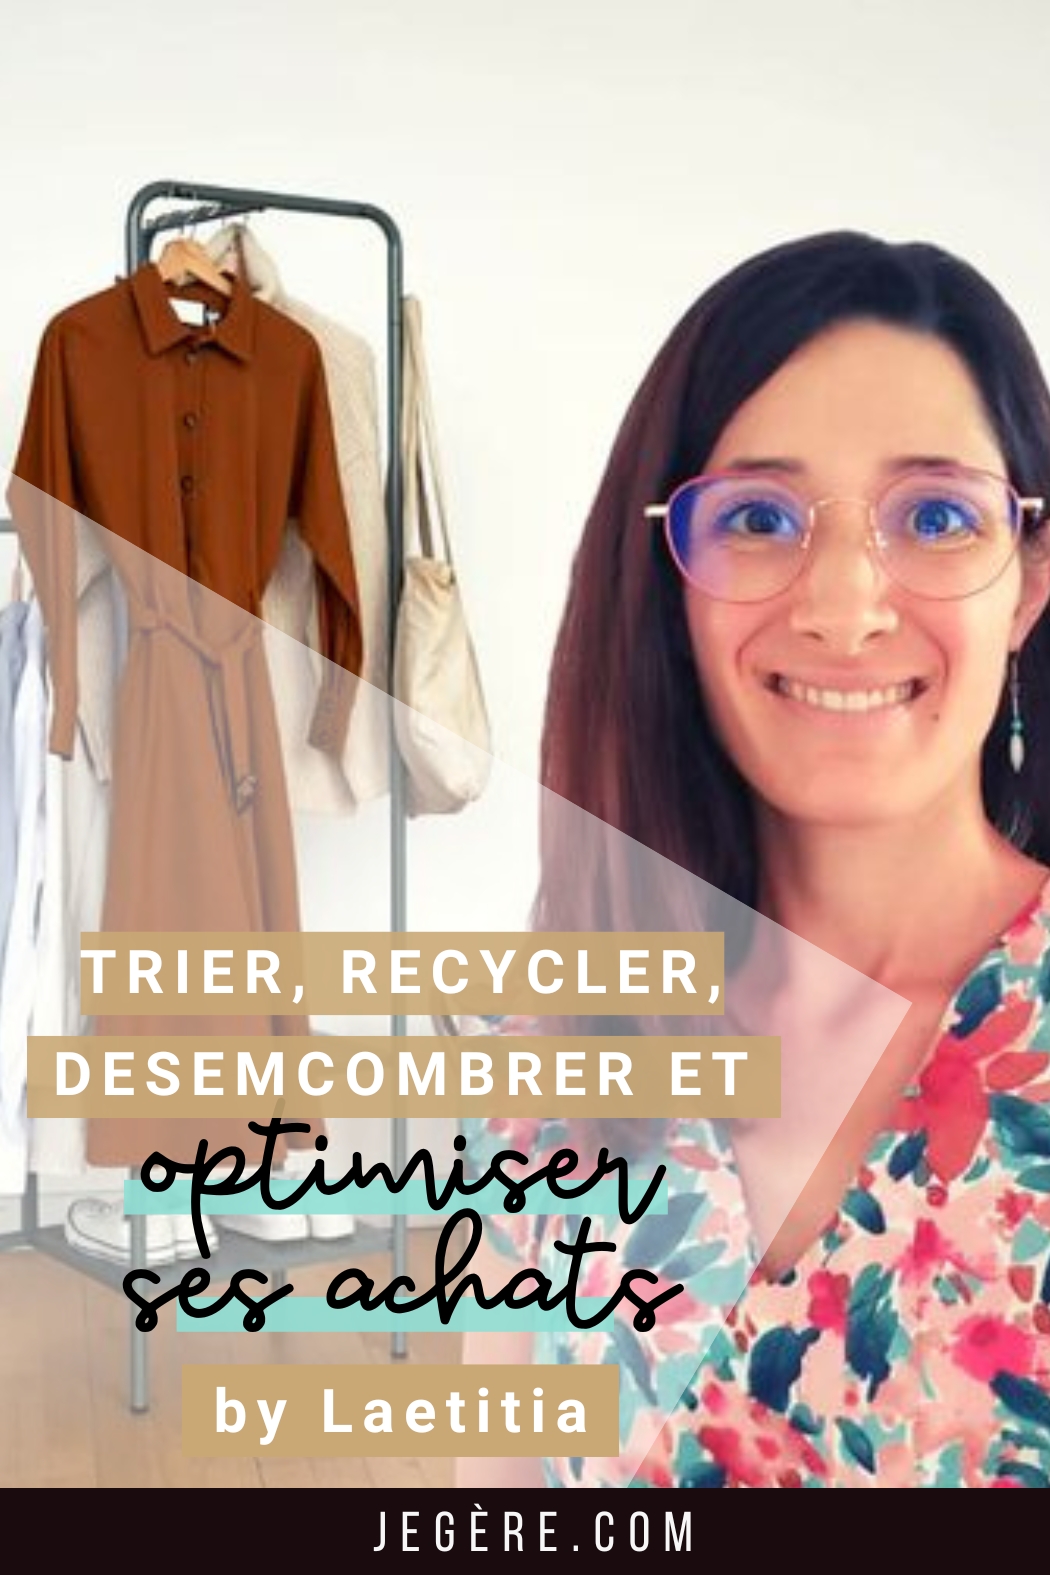 Trier Recycler Desencombrer et optimiser ses achats avec Laetitia